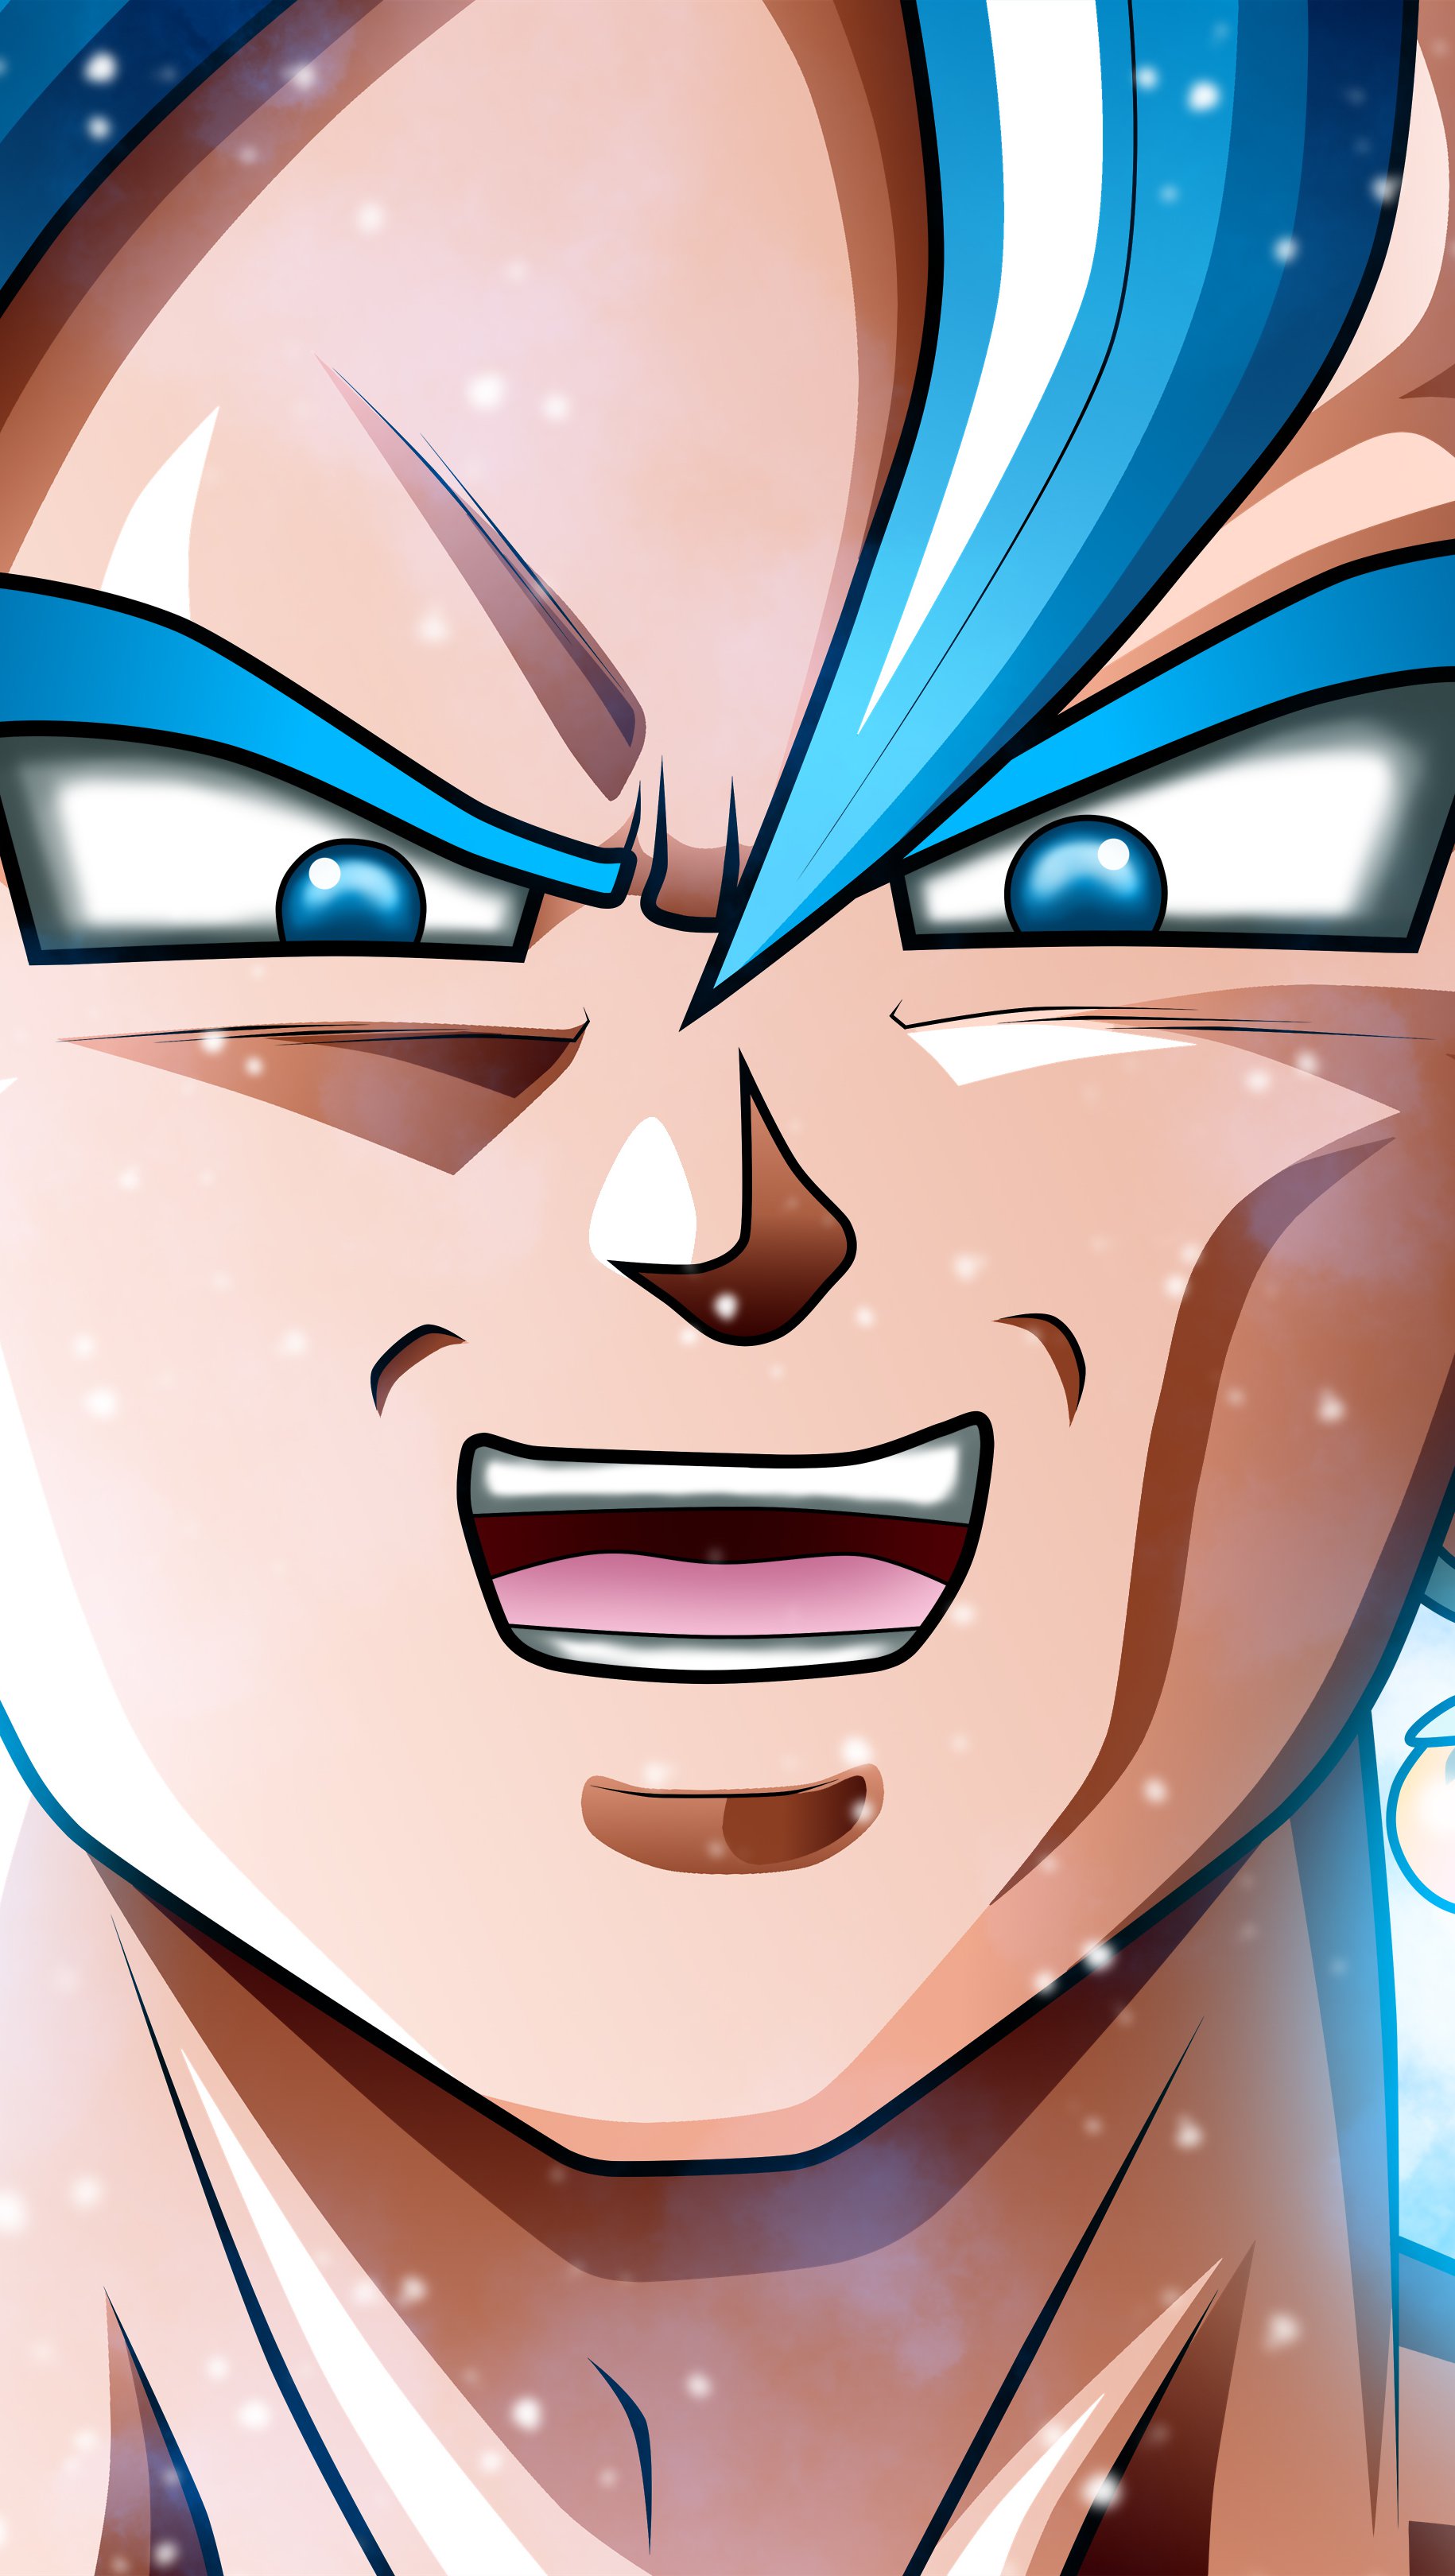 Fondos de pantalla Anime Super Saiyan Blue de Dragon Ball Super Vertical